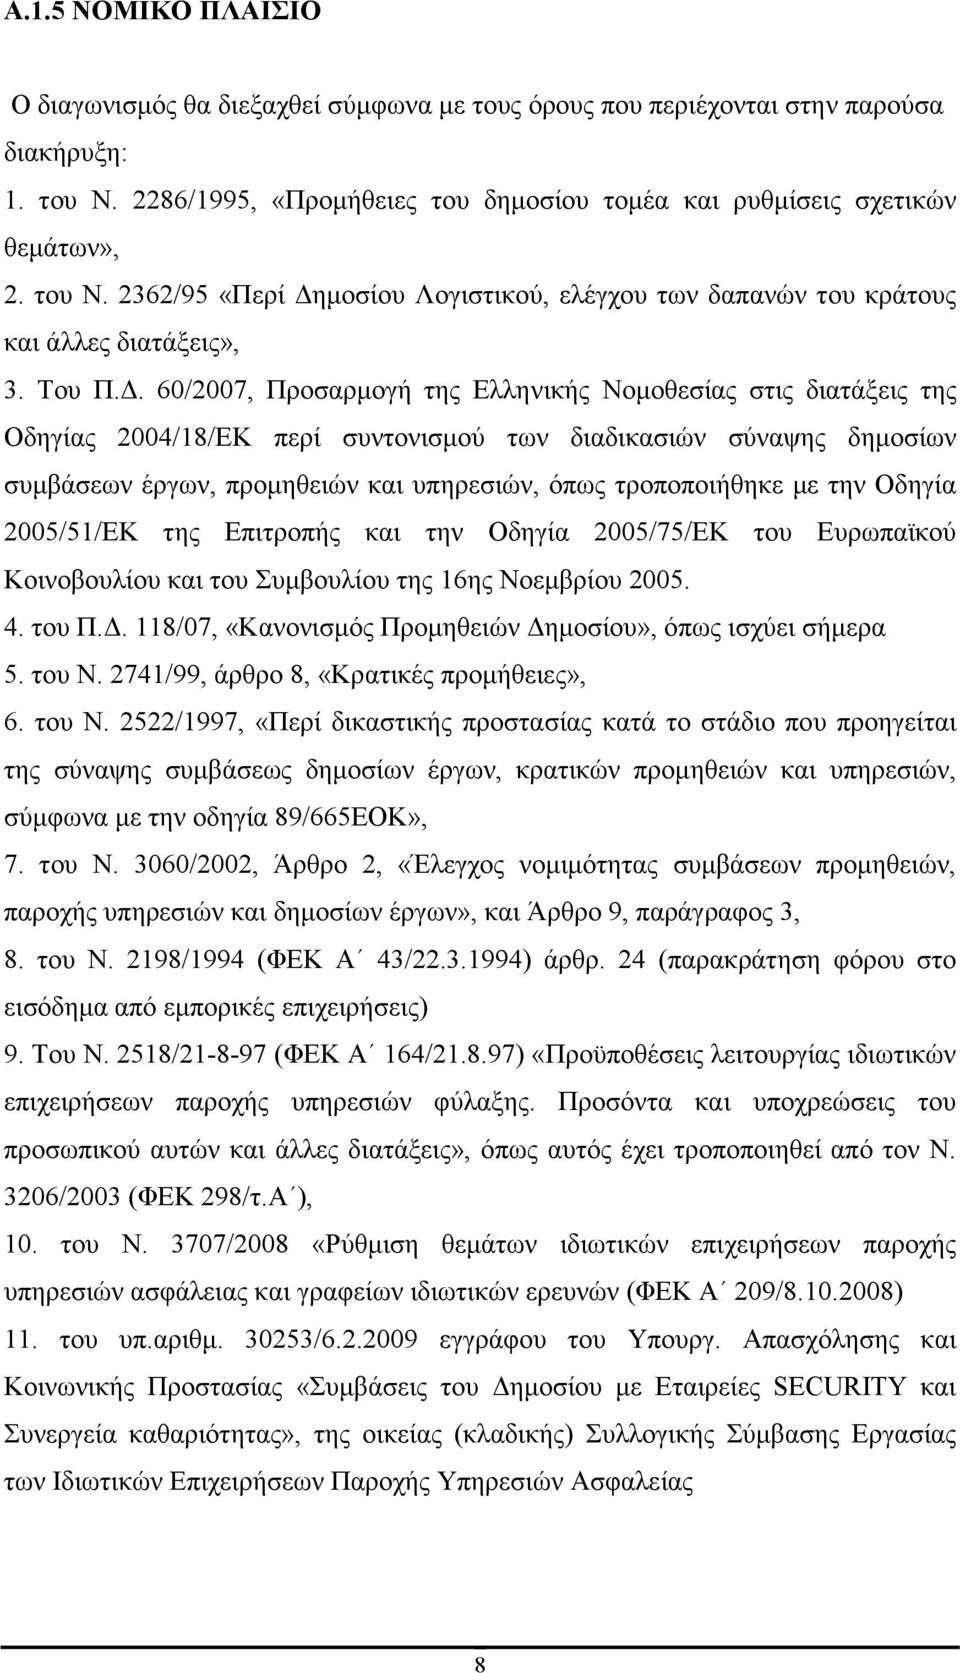 . 60/2007, Προσαρµογή της Ελληνικής Νοµοθεσίας στις διατάξεις της Οδηγίας 2004/18/ΕΚ περί συντονισµού των διαδικασιών σύναψης δηµοσίων συµβάσεων έργων, προµηθειών και υπηρεσιών, όπως τροποποιήθηκε µε